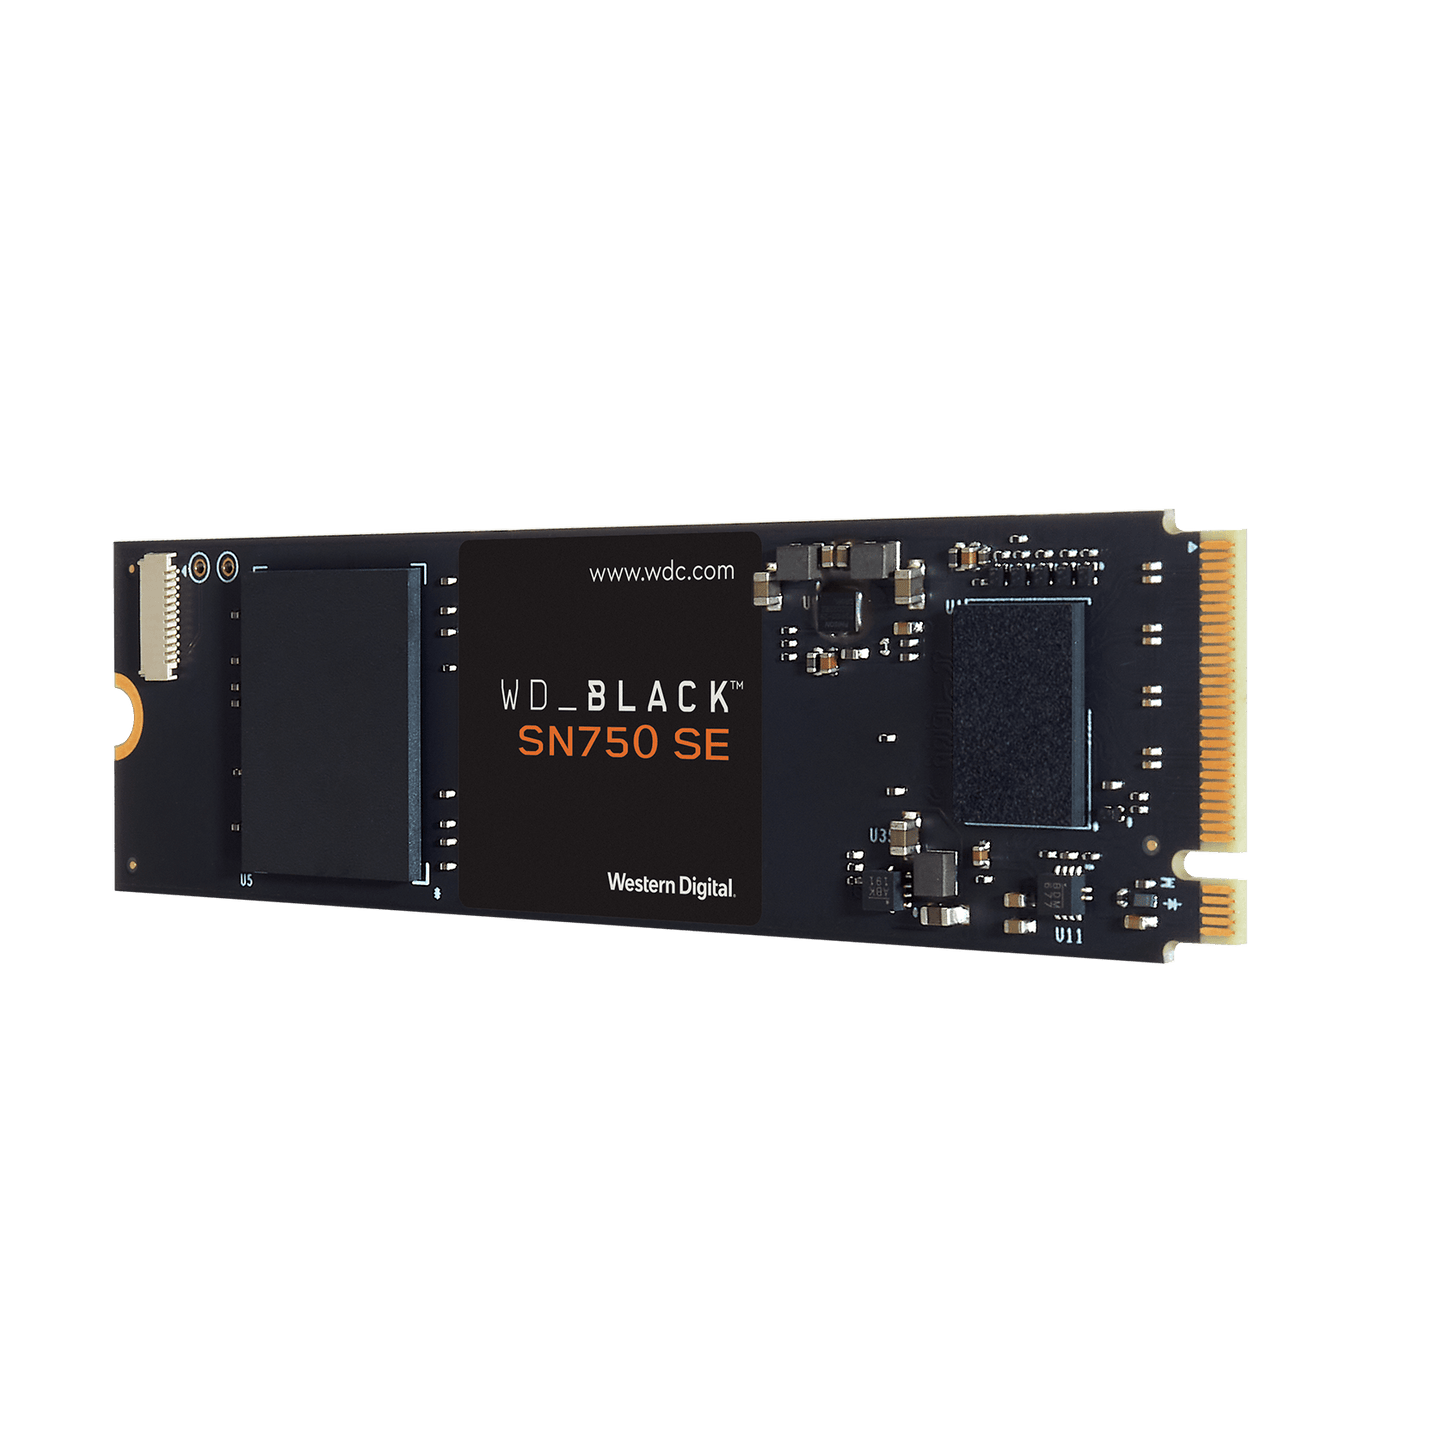 WD Black SN750 SE 1TB NVMe SSD